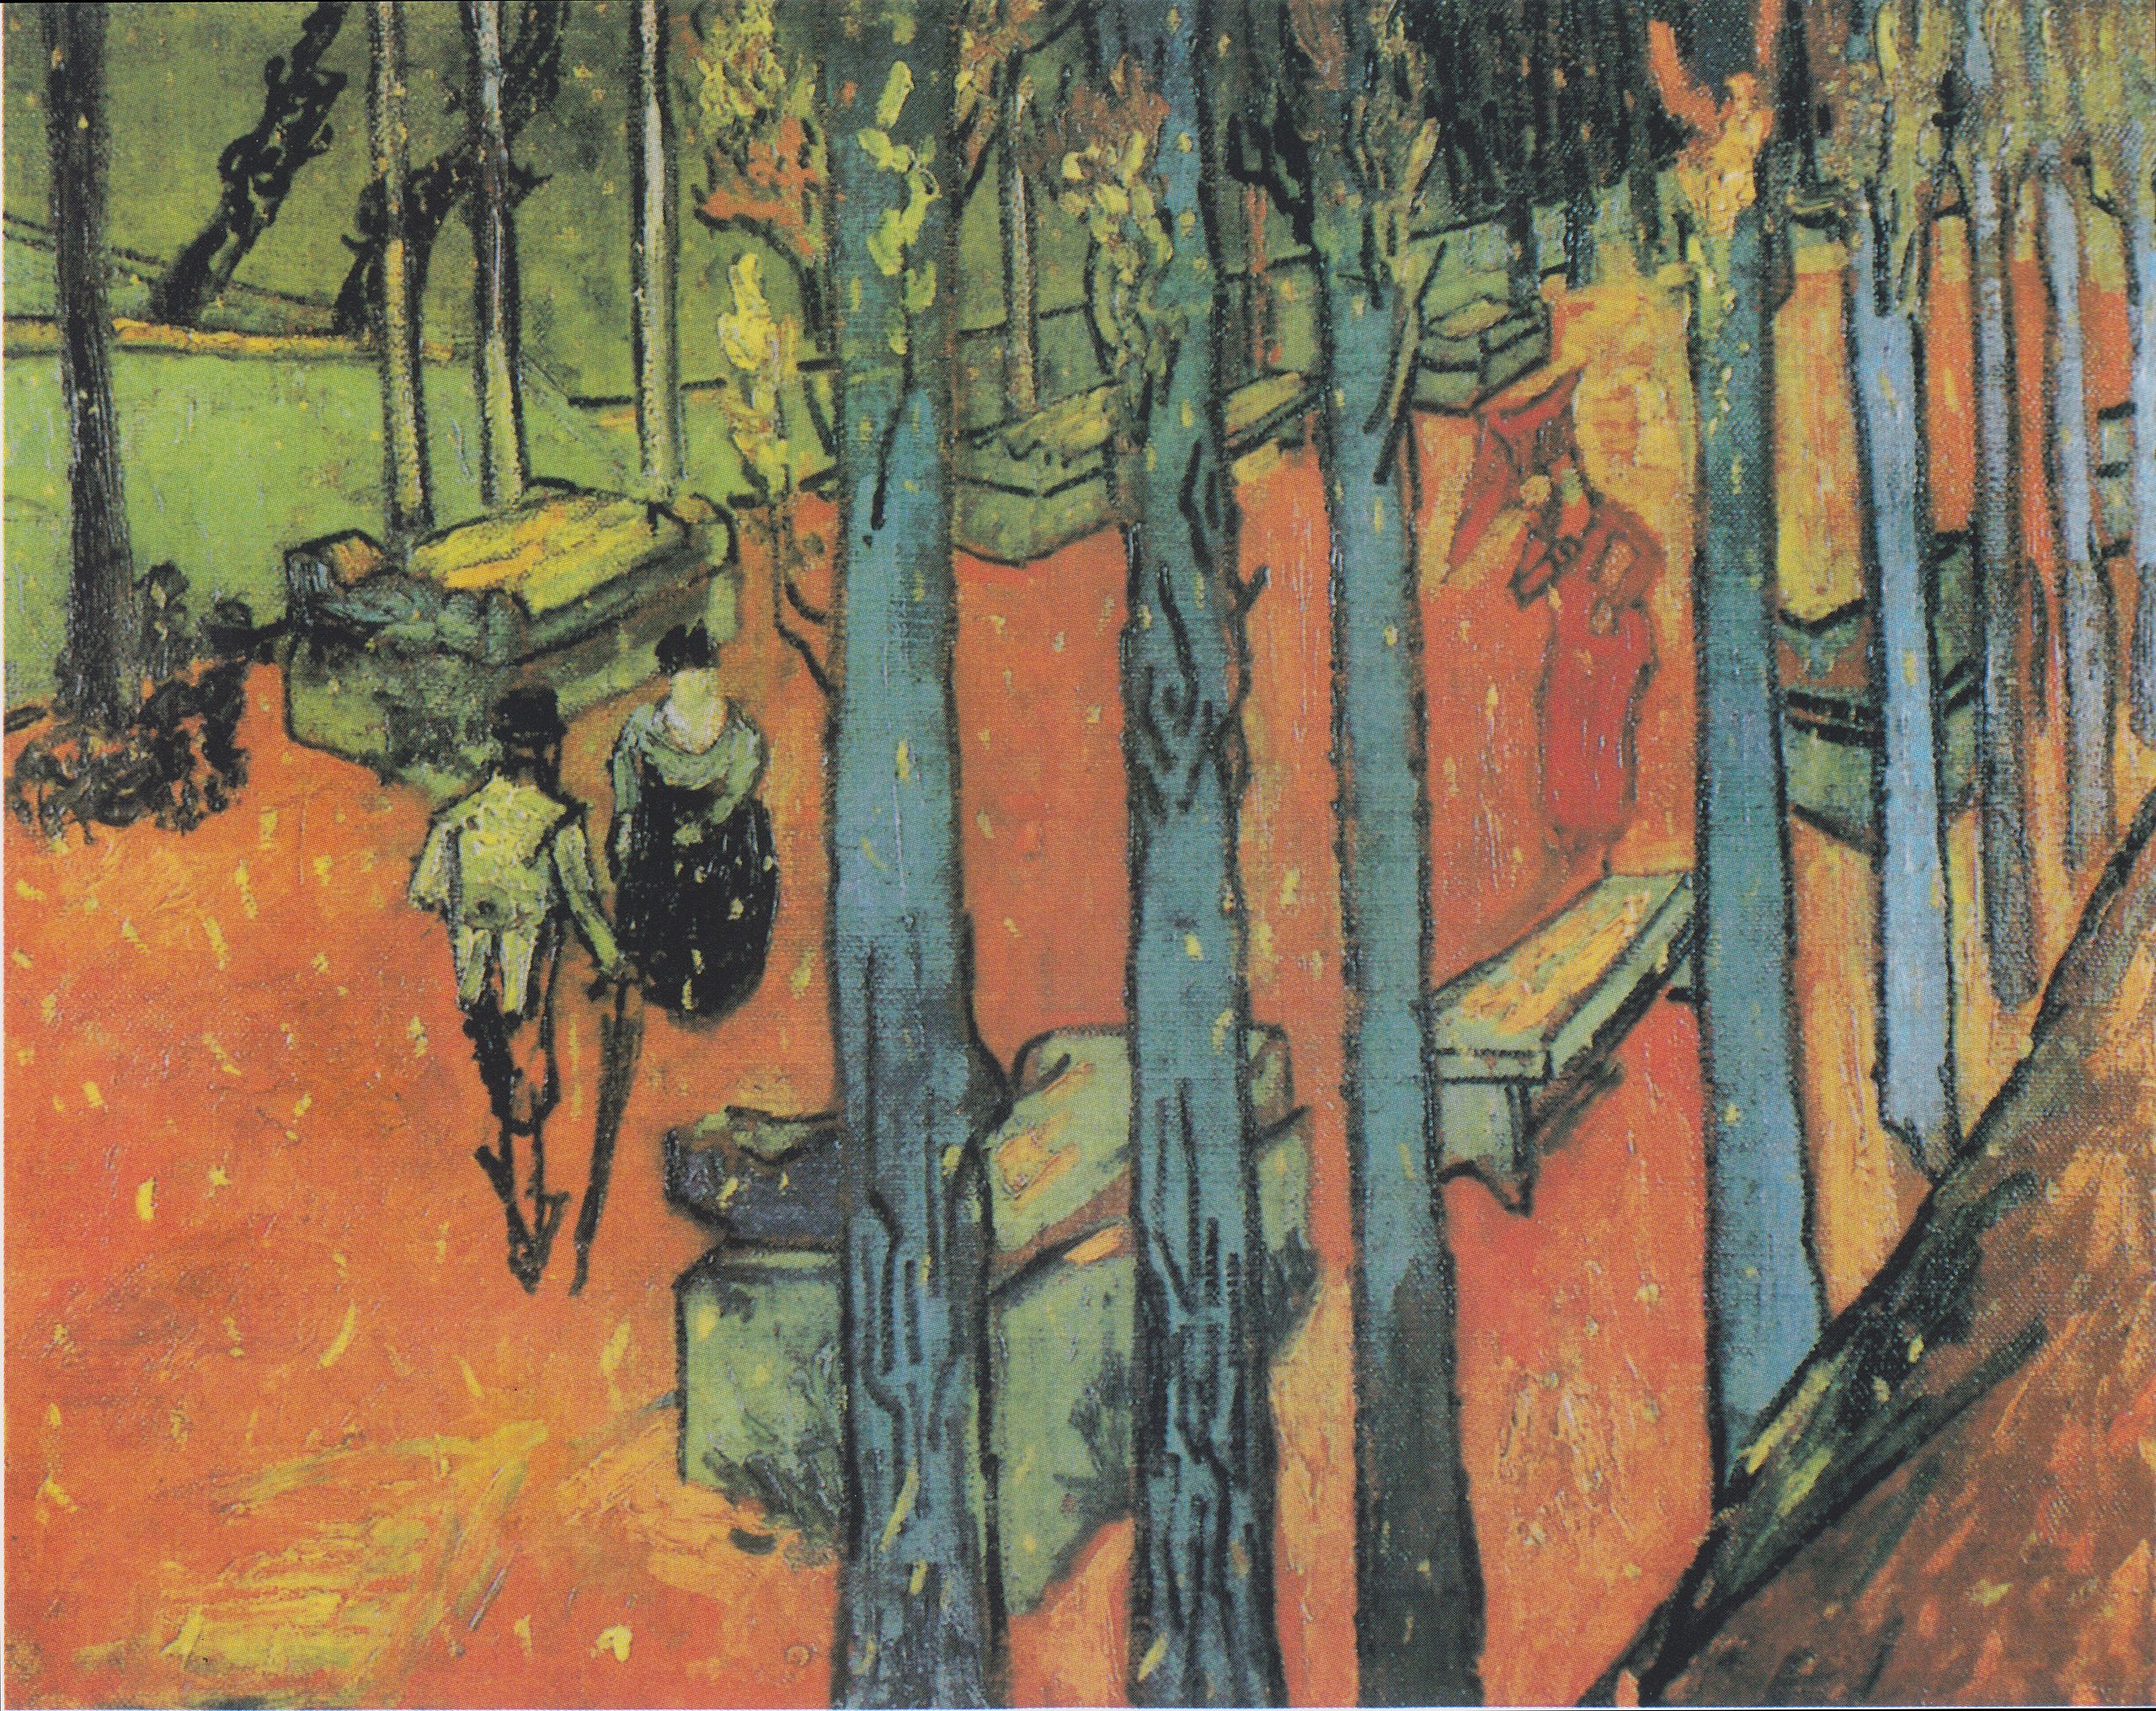 Feuille tombantes (Les Alyscamps) by Vincent van Gogh - 1888 - 72,8 × 91,9 cm Kröller-Müller Museum